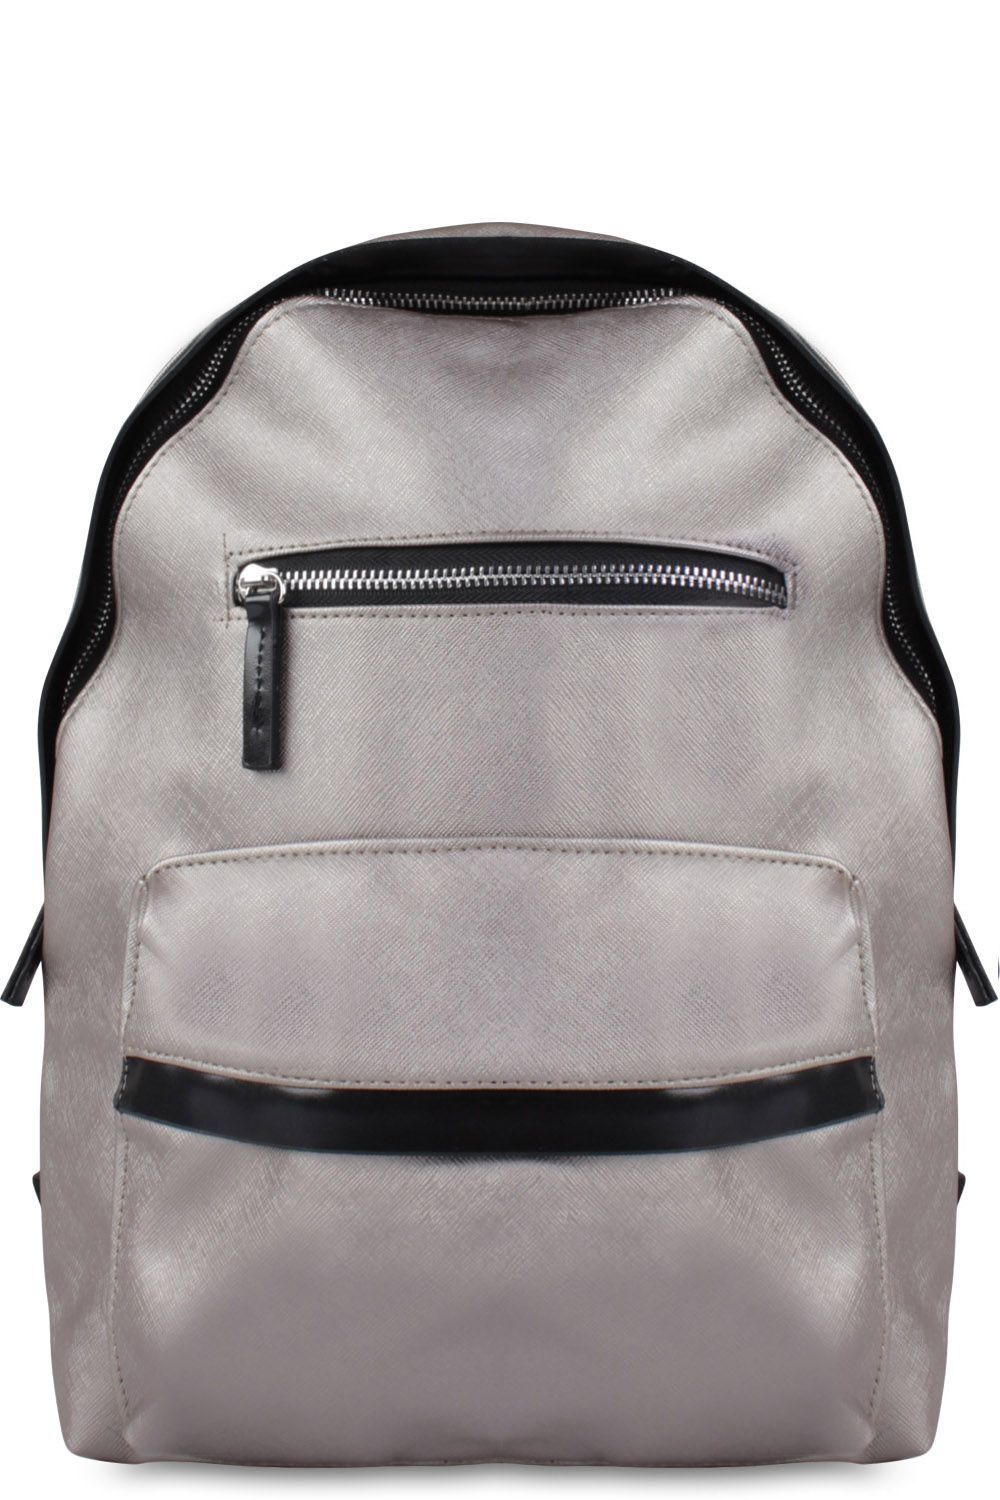 Рюкзак Multibrand, размер Единый школа, цвет серый 184-bronse - фото 1